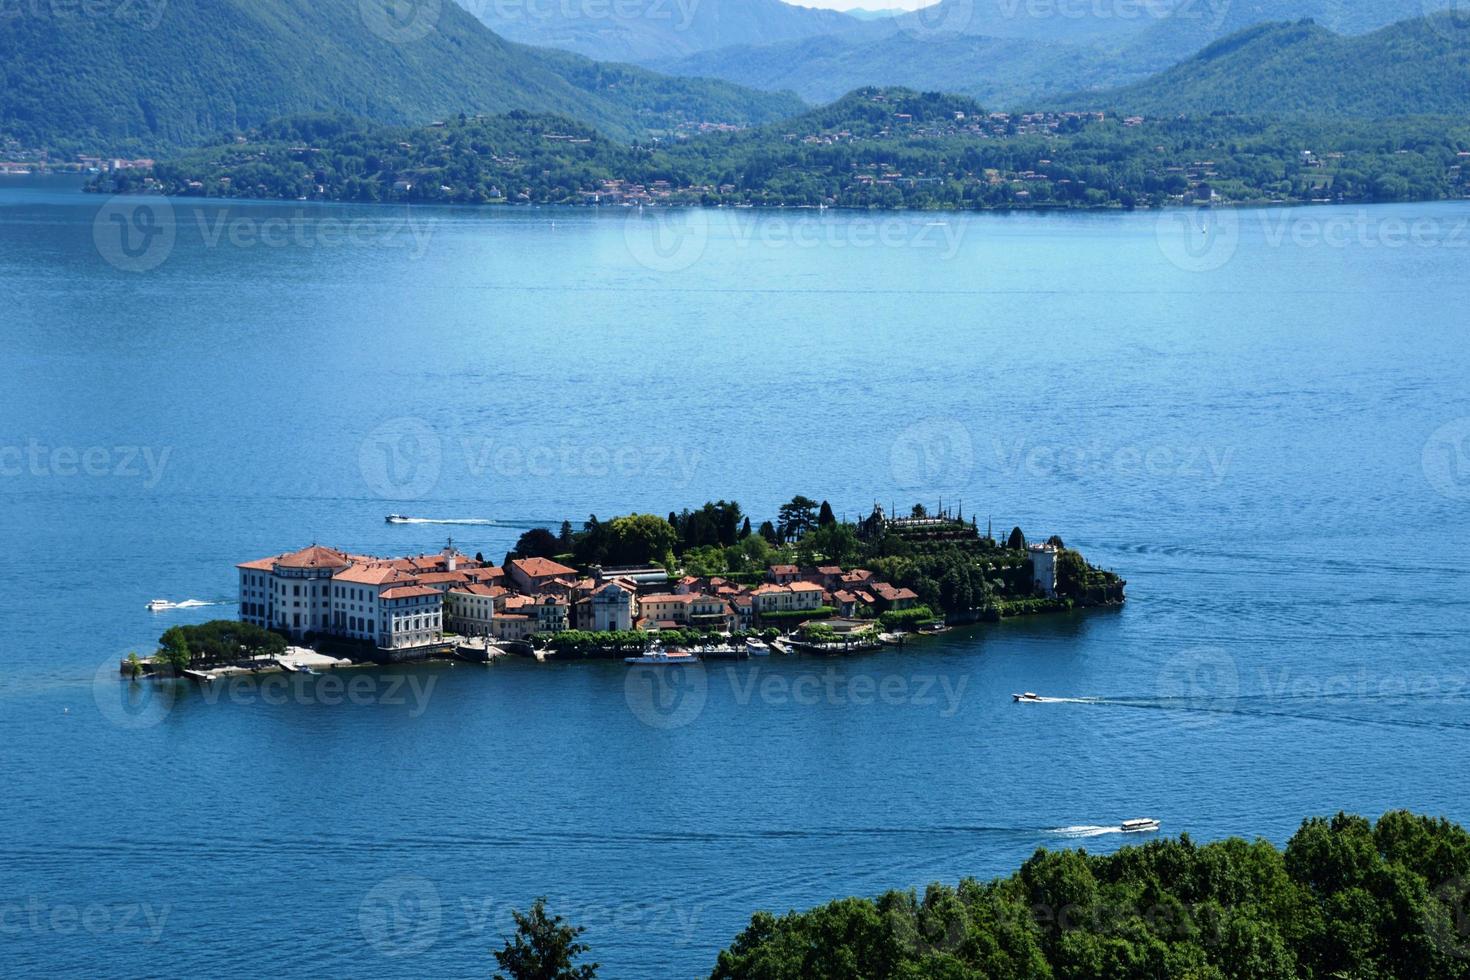 isola bella lago maggiore in italia foto